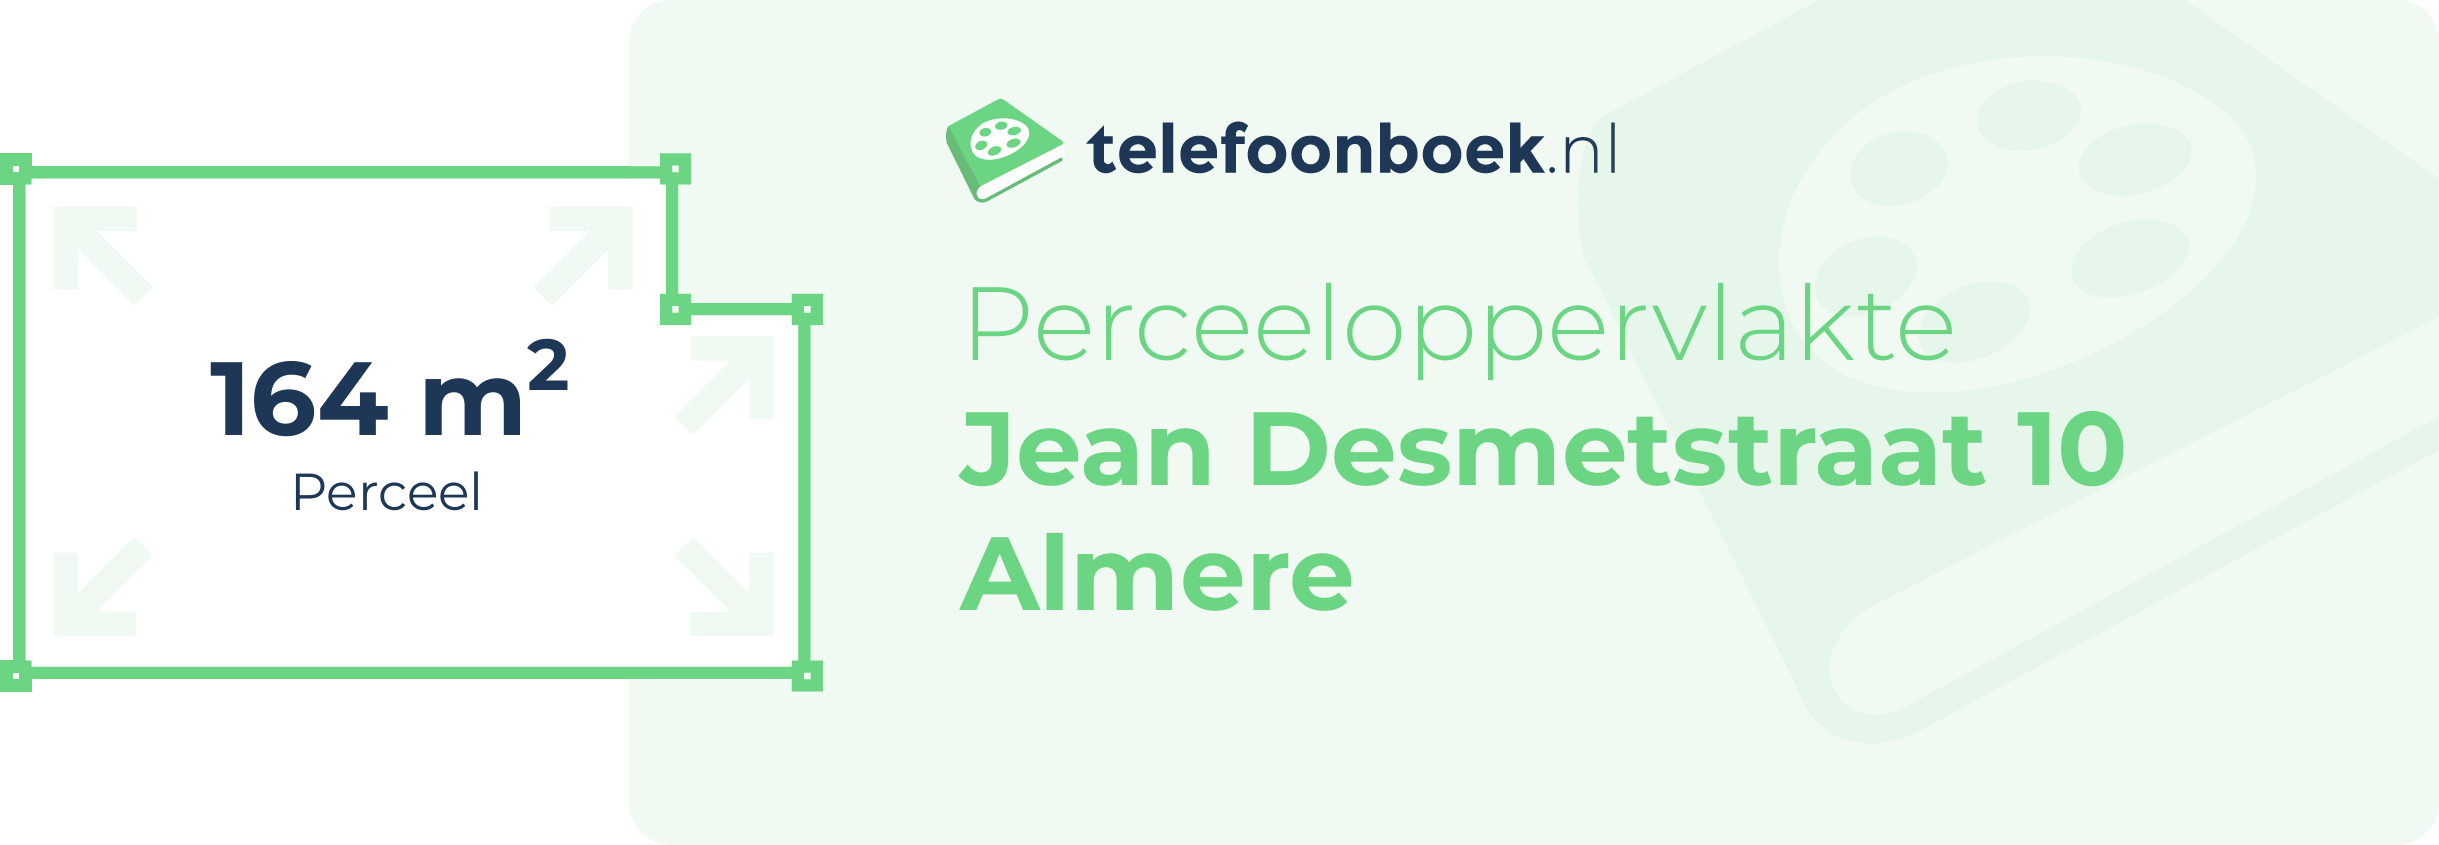 Perceeloppervlakte Jean Desmetstraat 10 Almere